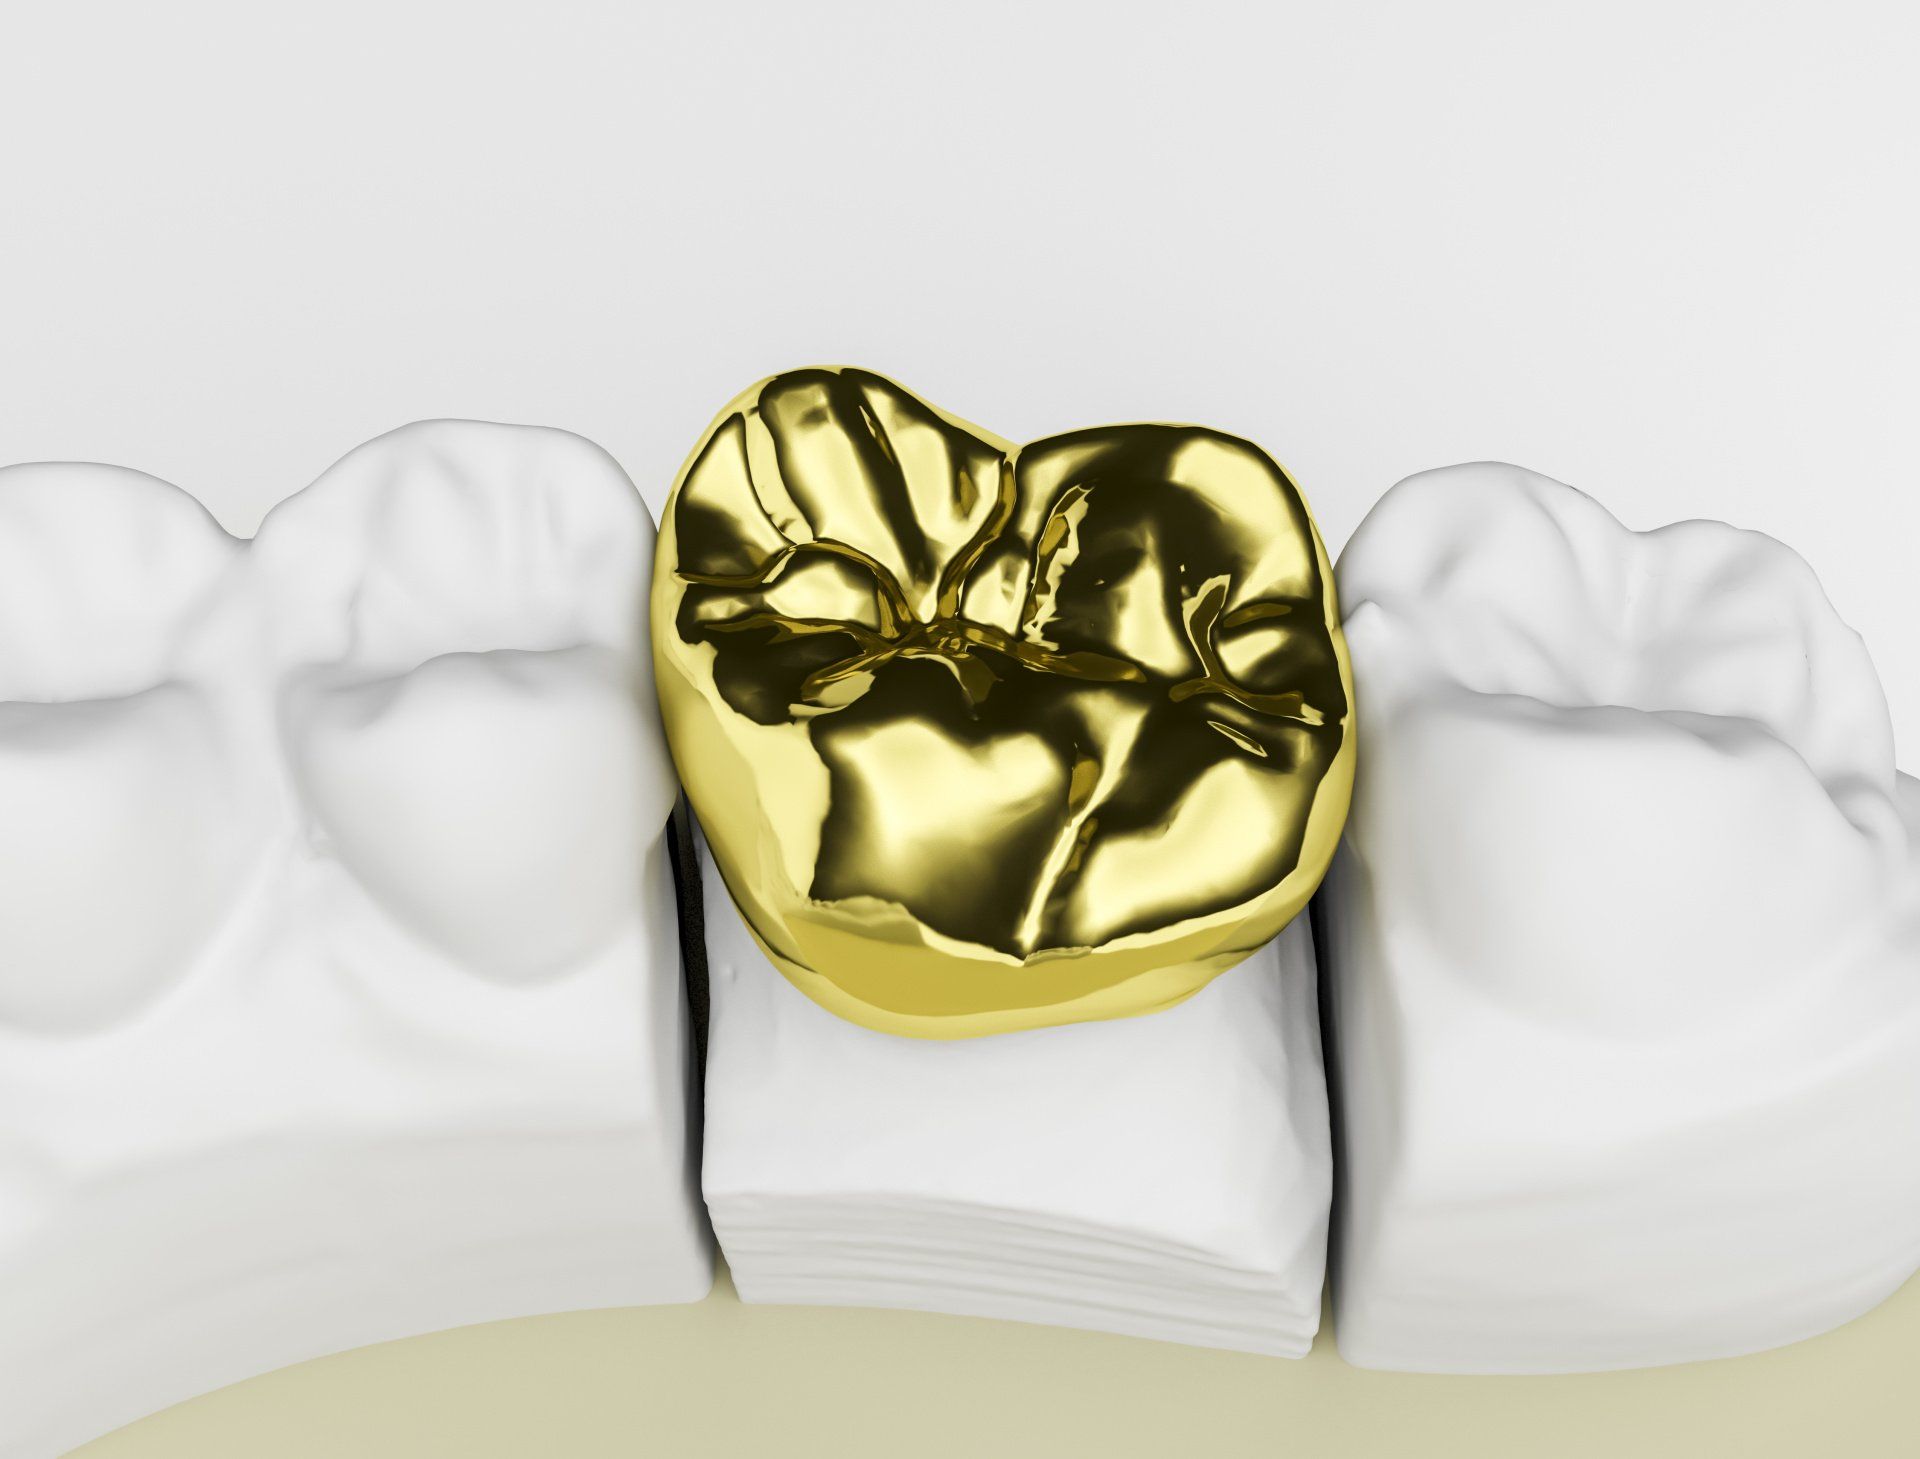 full cast metal dental restorations